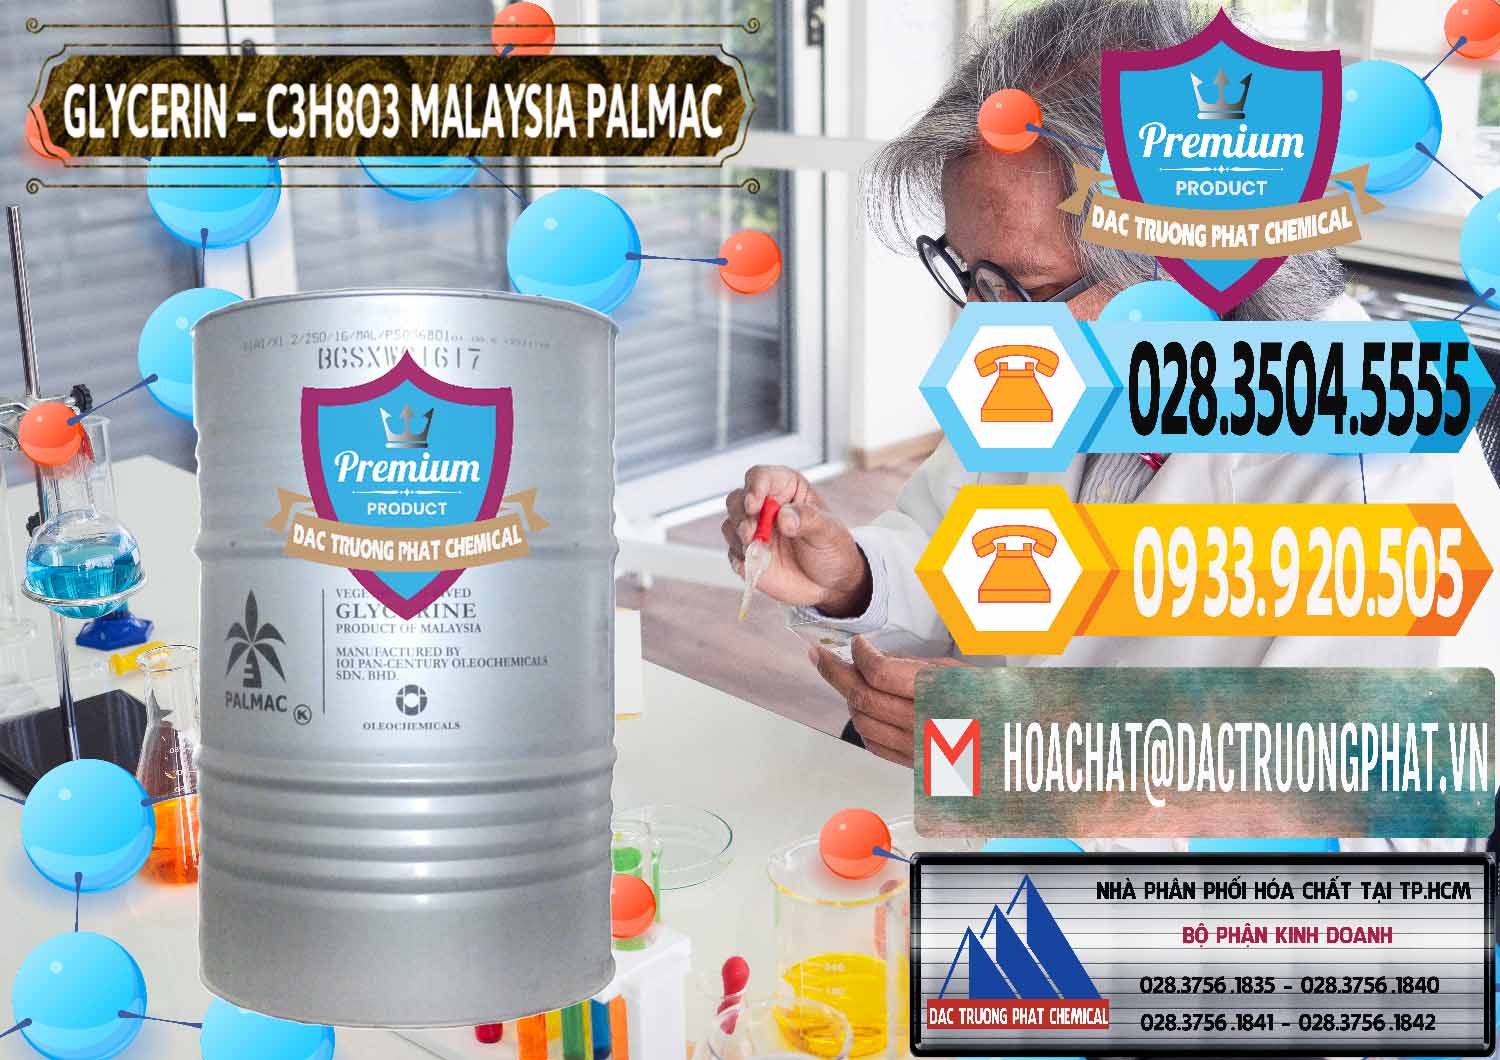 Cty chuyên bán _ cung ứng Glycerin – C3H8O3 99.7% Malaysia Palmac - 0067 - Đơn vị phân phối & bán hóa chất tại TP.HCM - hoachattayrua.net